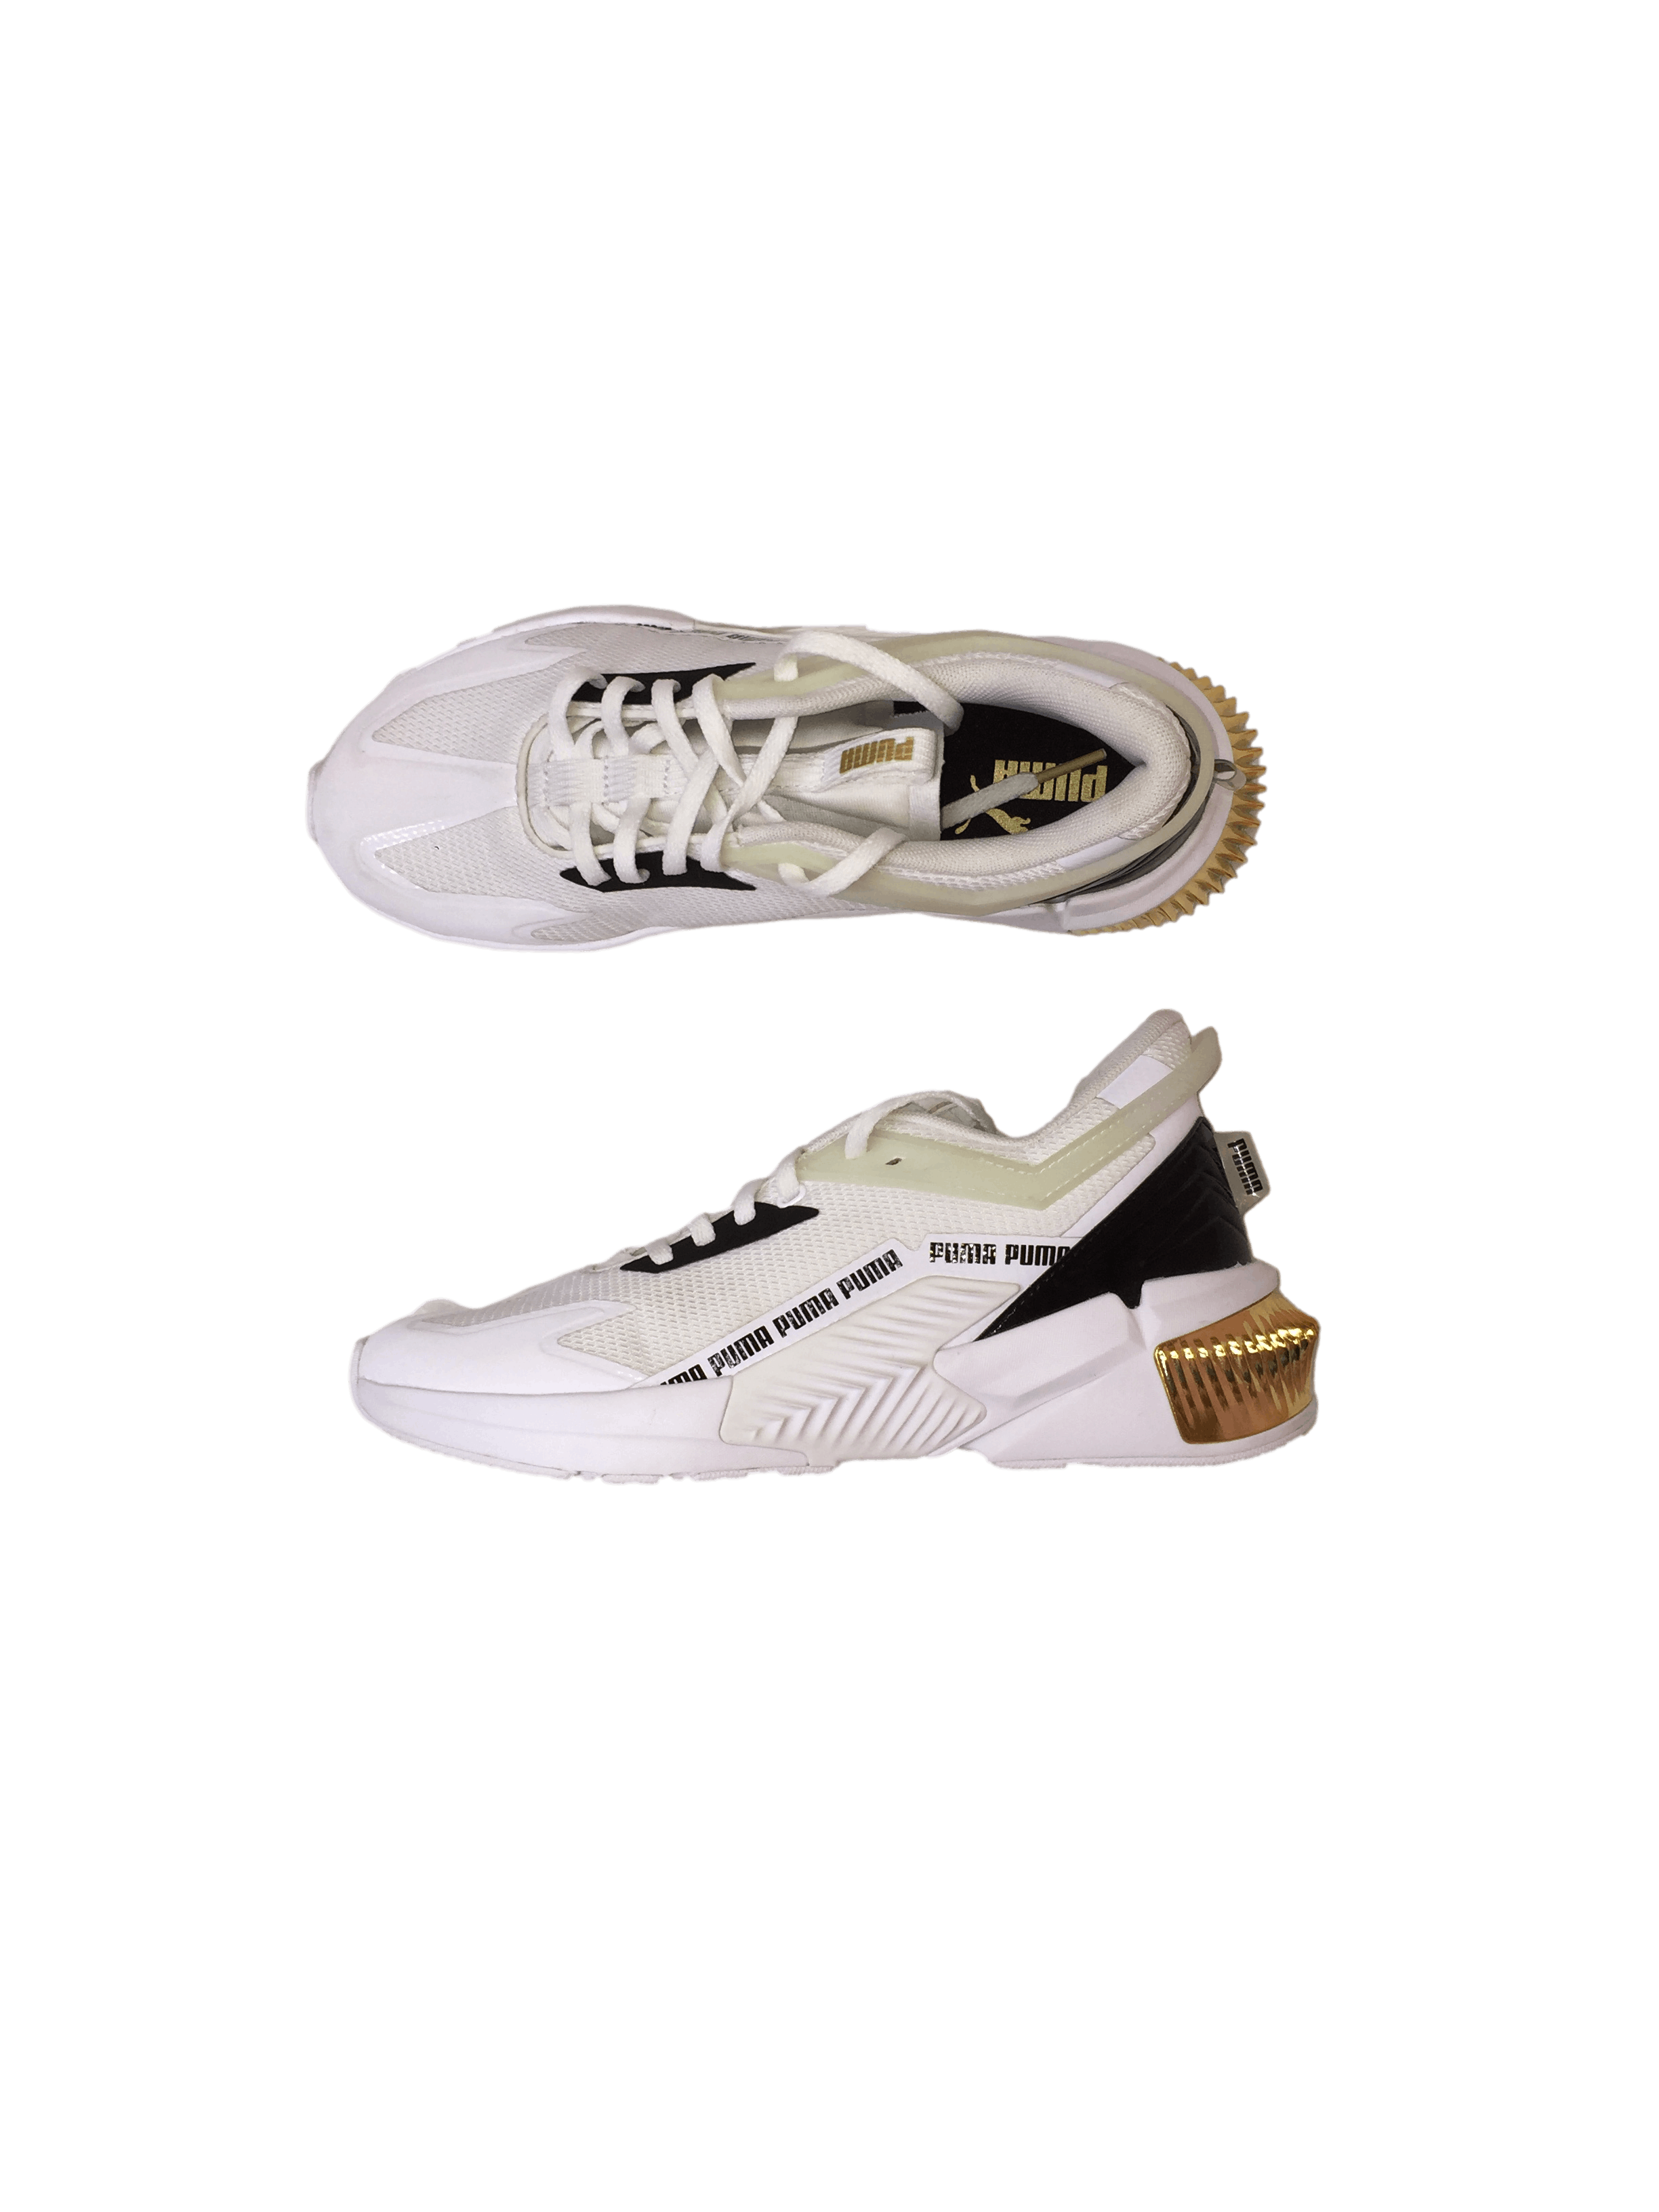 zapatillas Puma urbanas blancas con detalle dorado en el talón